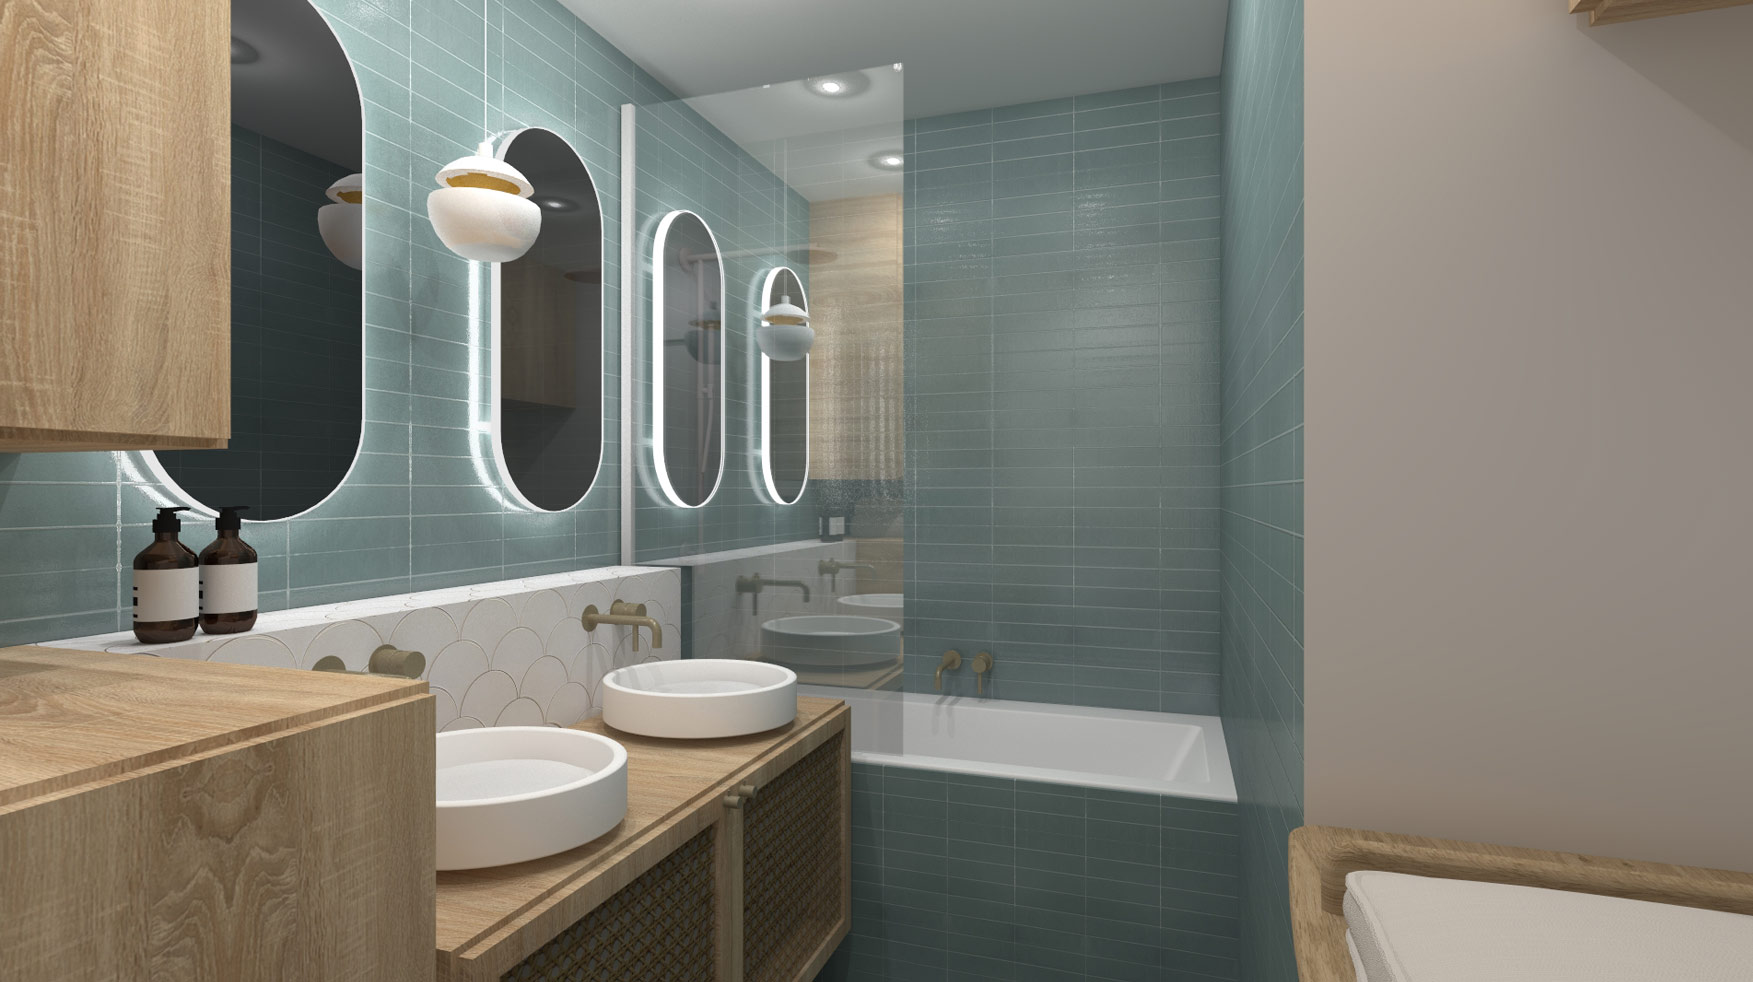 KLR : Rénovation intérieure d’un appartement à Paris, aménagement d’une salle de bain.